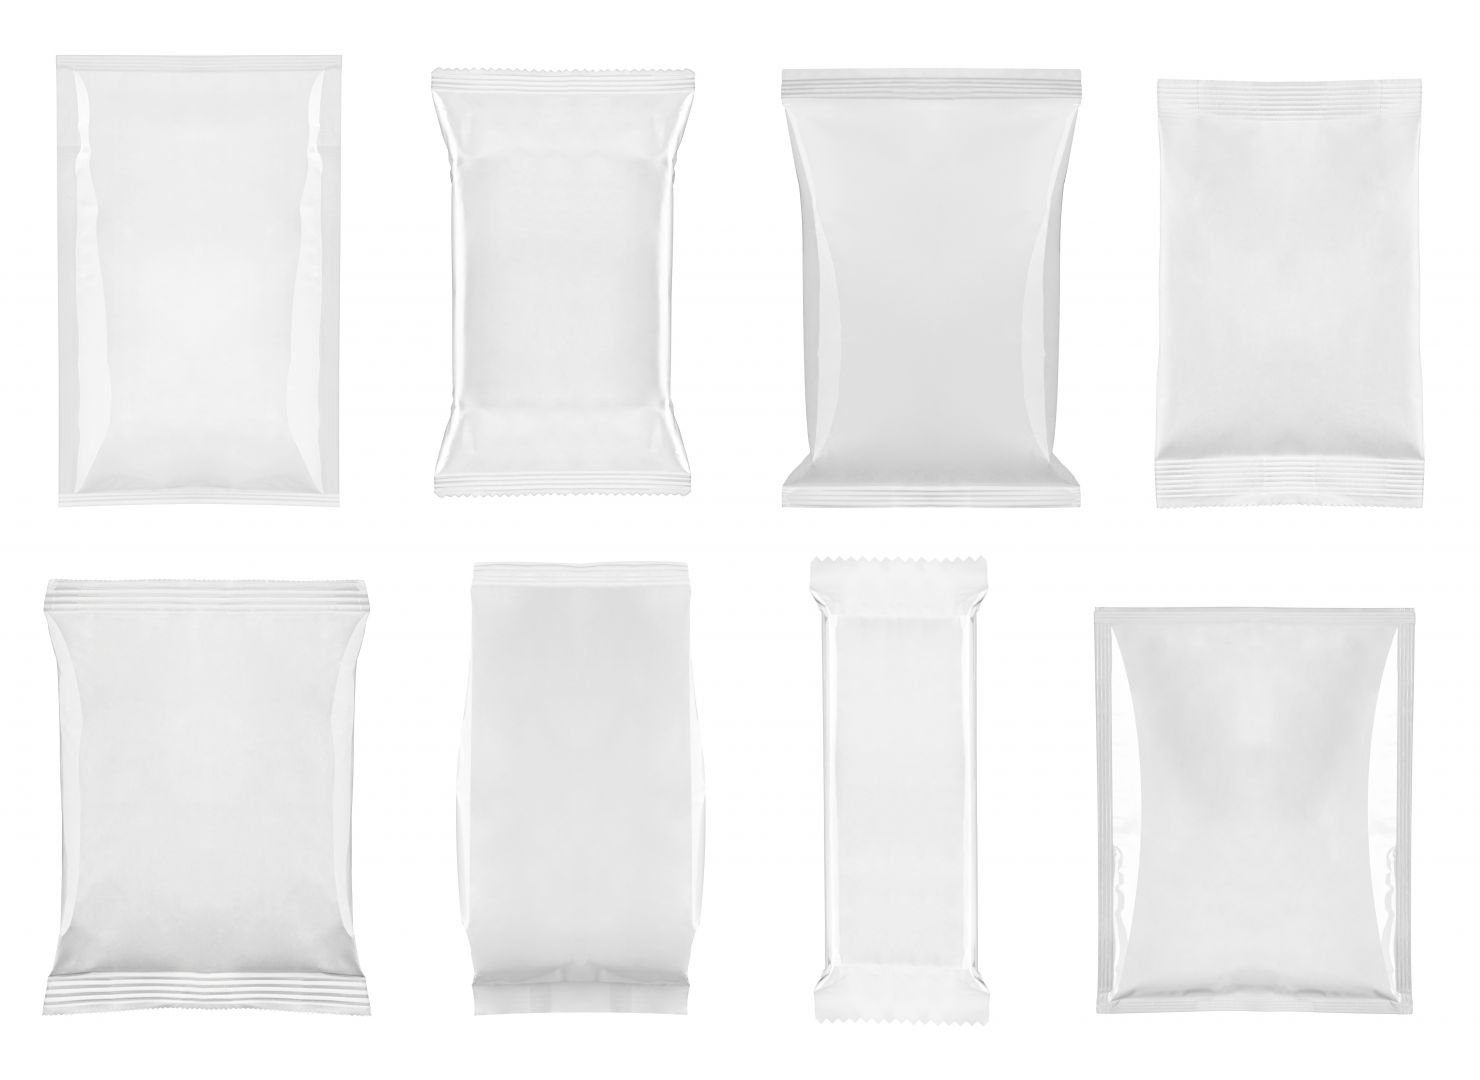 Poptávka na dodání použitých velkoobjemových vaků big bag (Obaly, obalový materiál) - Vsetín